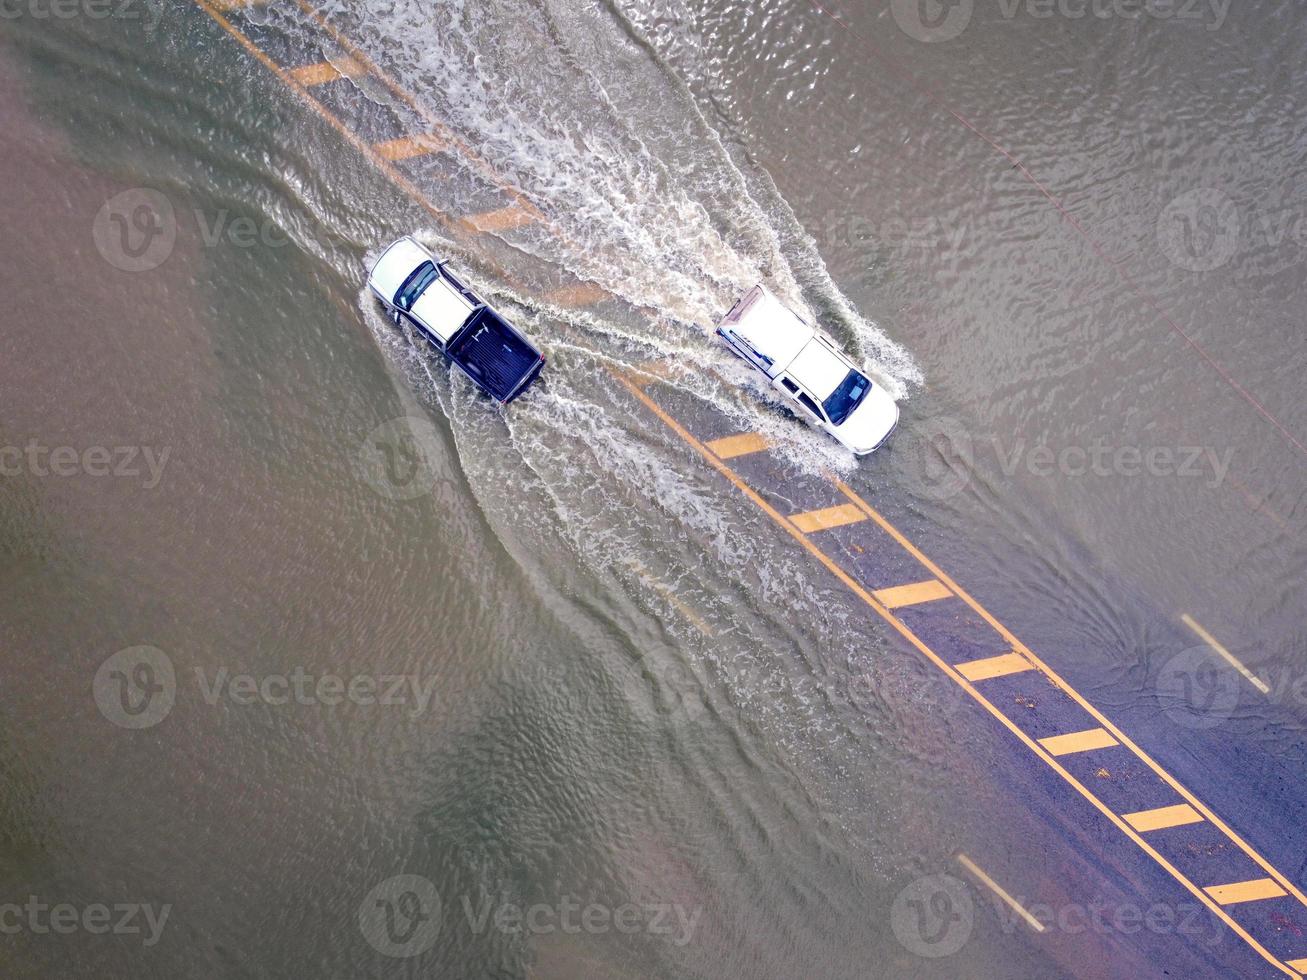 overstroomd wegen, mensen met auto's rennen door. antenne dar fotografie shows straten overstromingen en mensen auto's voorbijgaan door, spatten water. foto